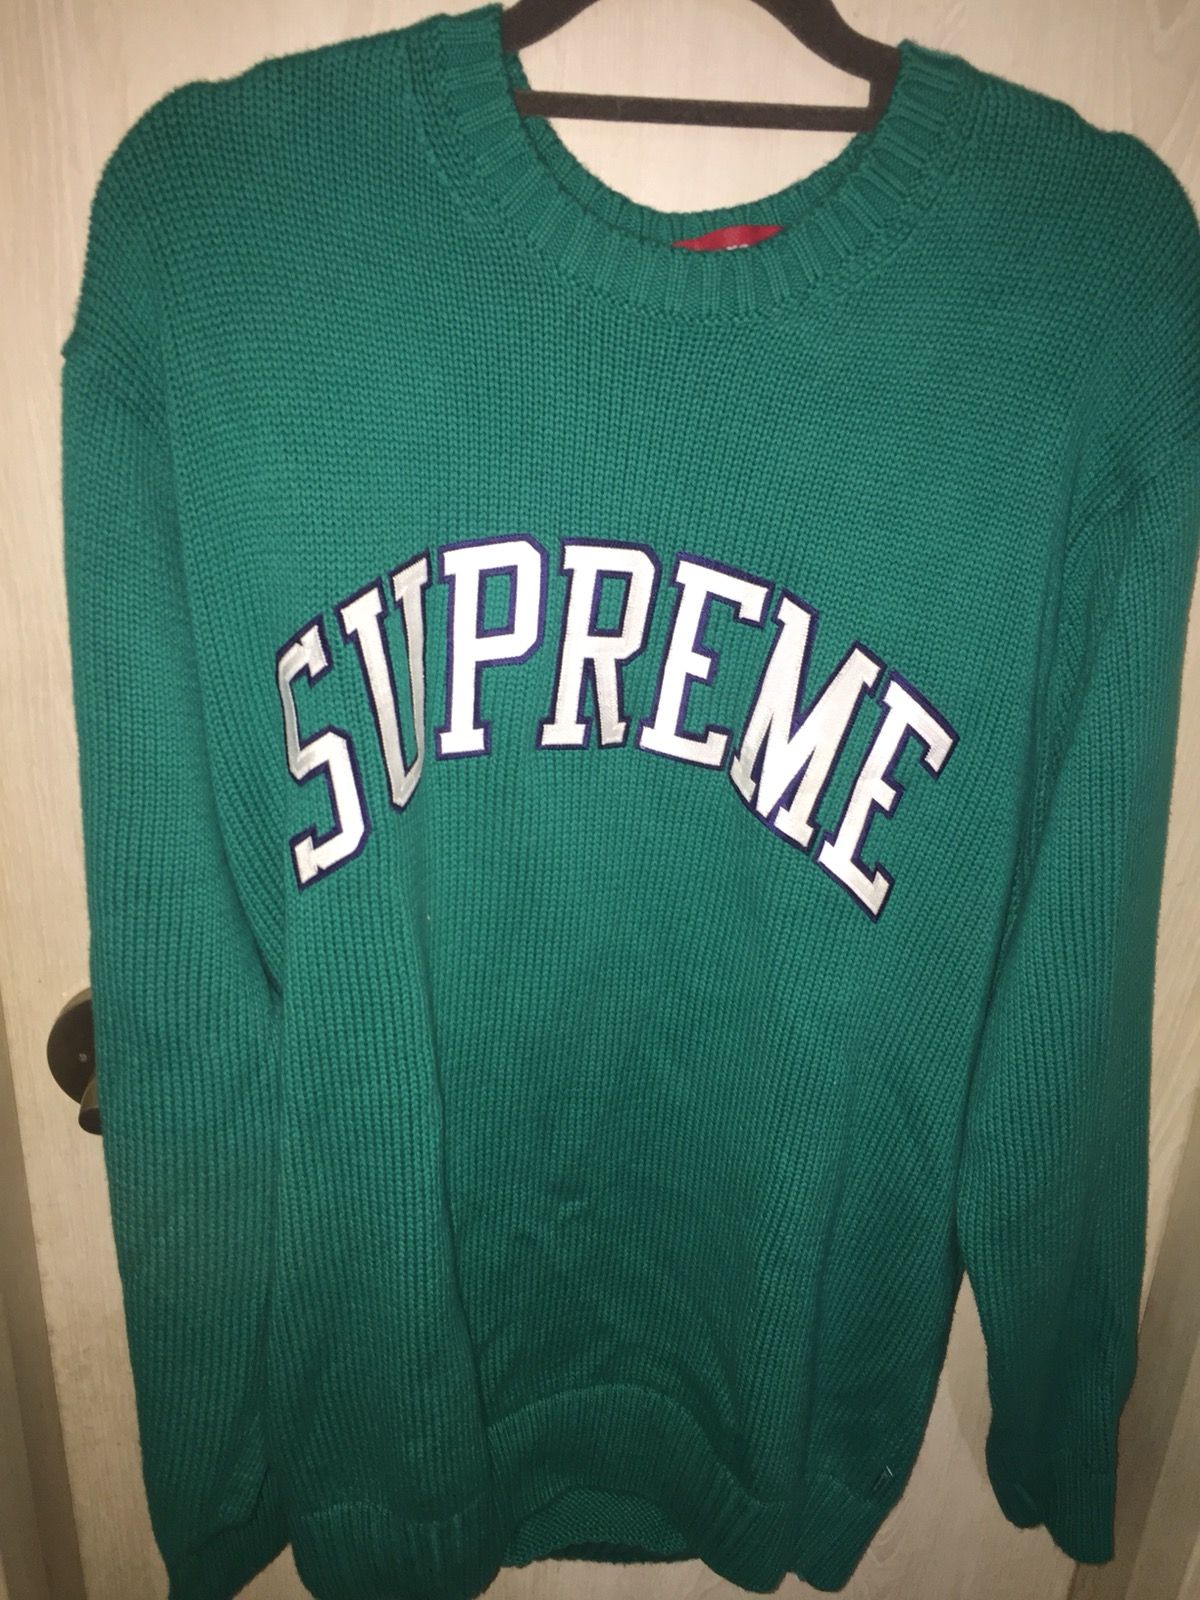 Supreme Supreme green sweater | Grailed